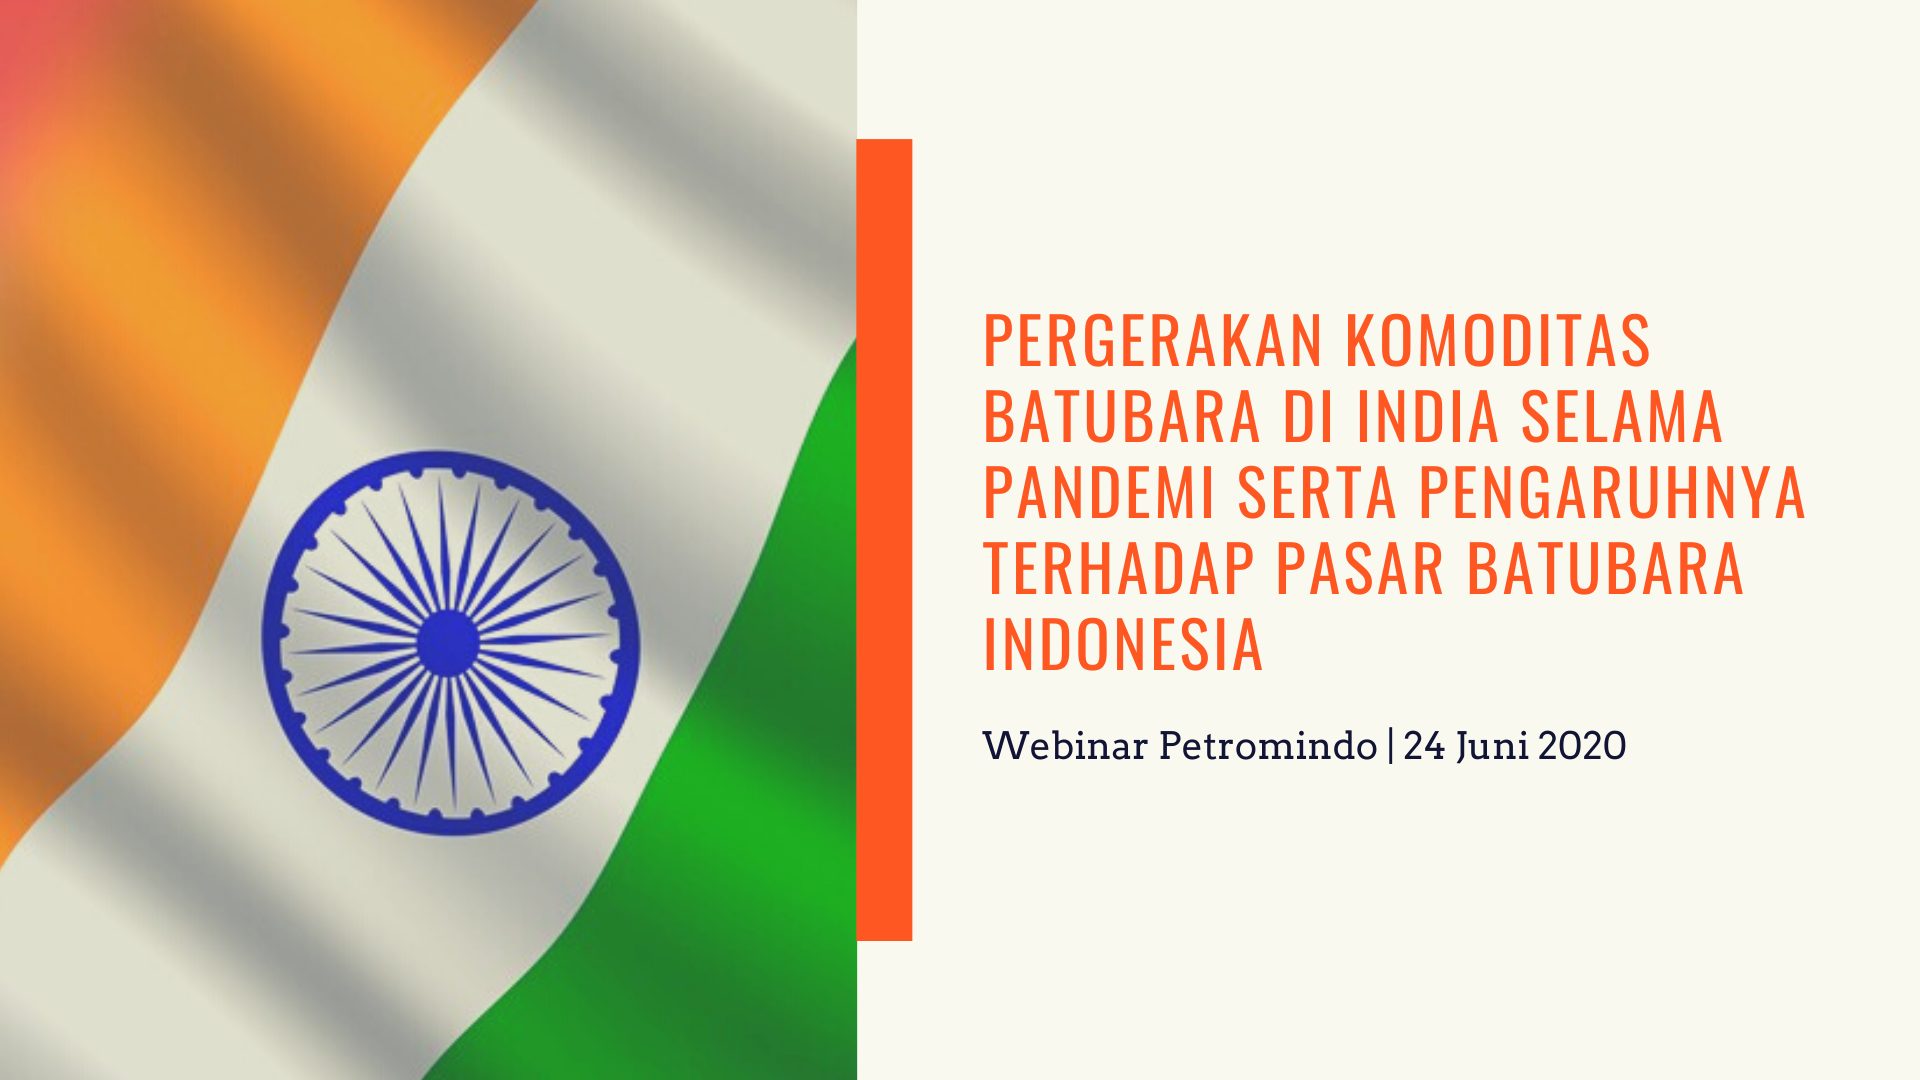 Pergerakan Komoditas Batubara di India selama Pandemi serta Pengaruhnya terhadap Pasar Batubara Indonesia